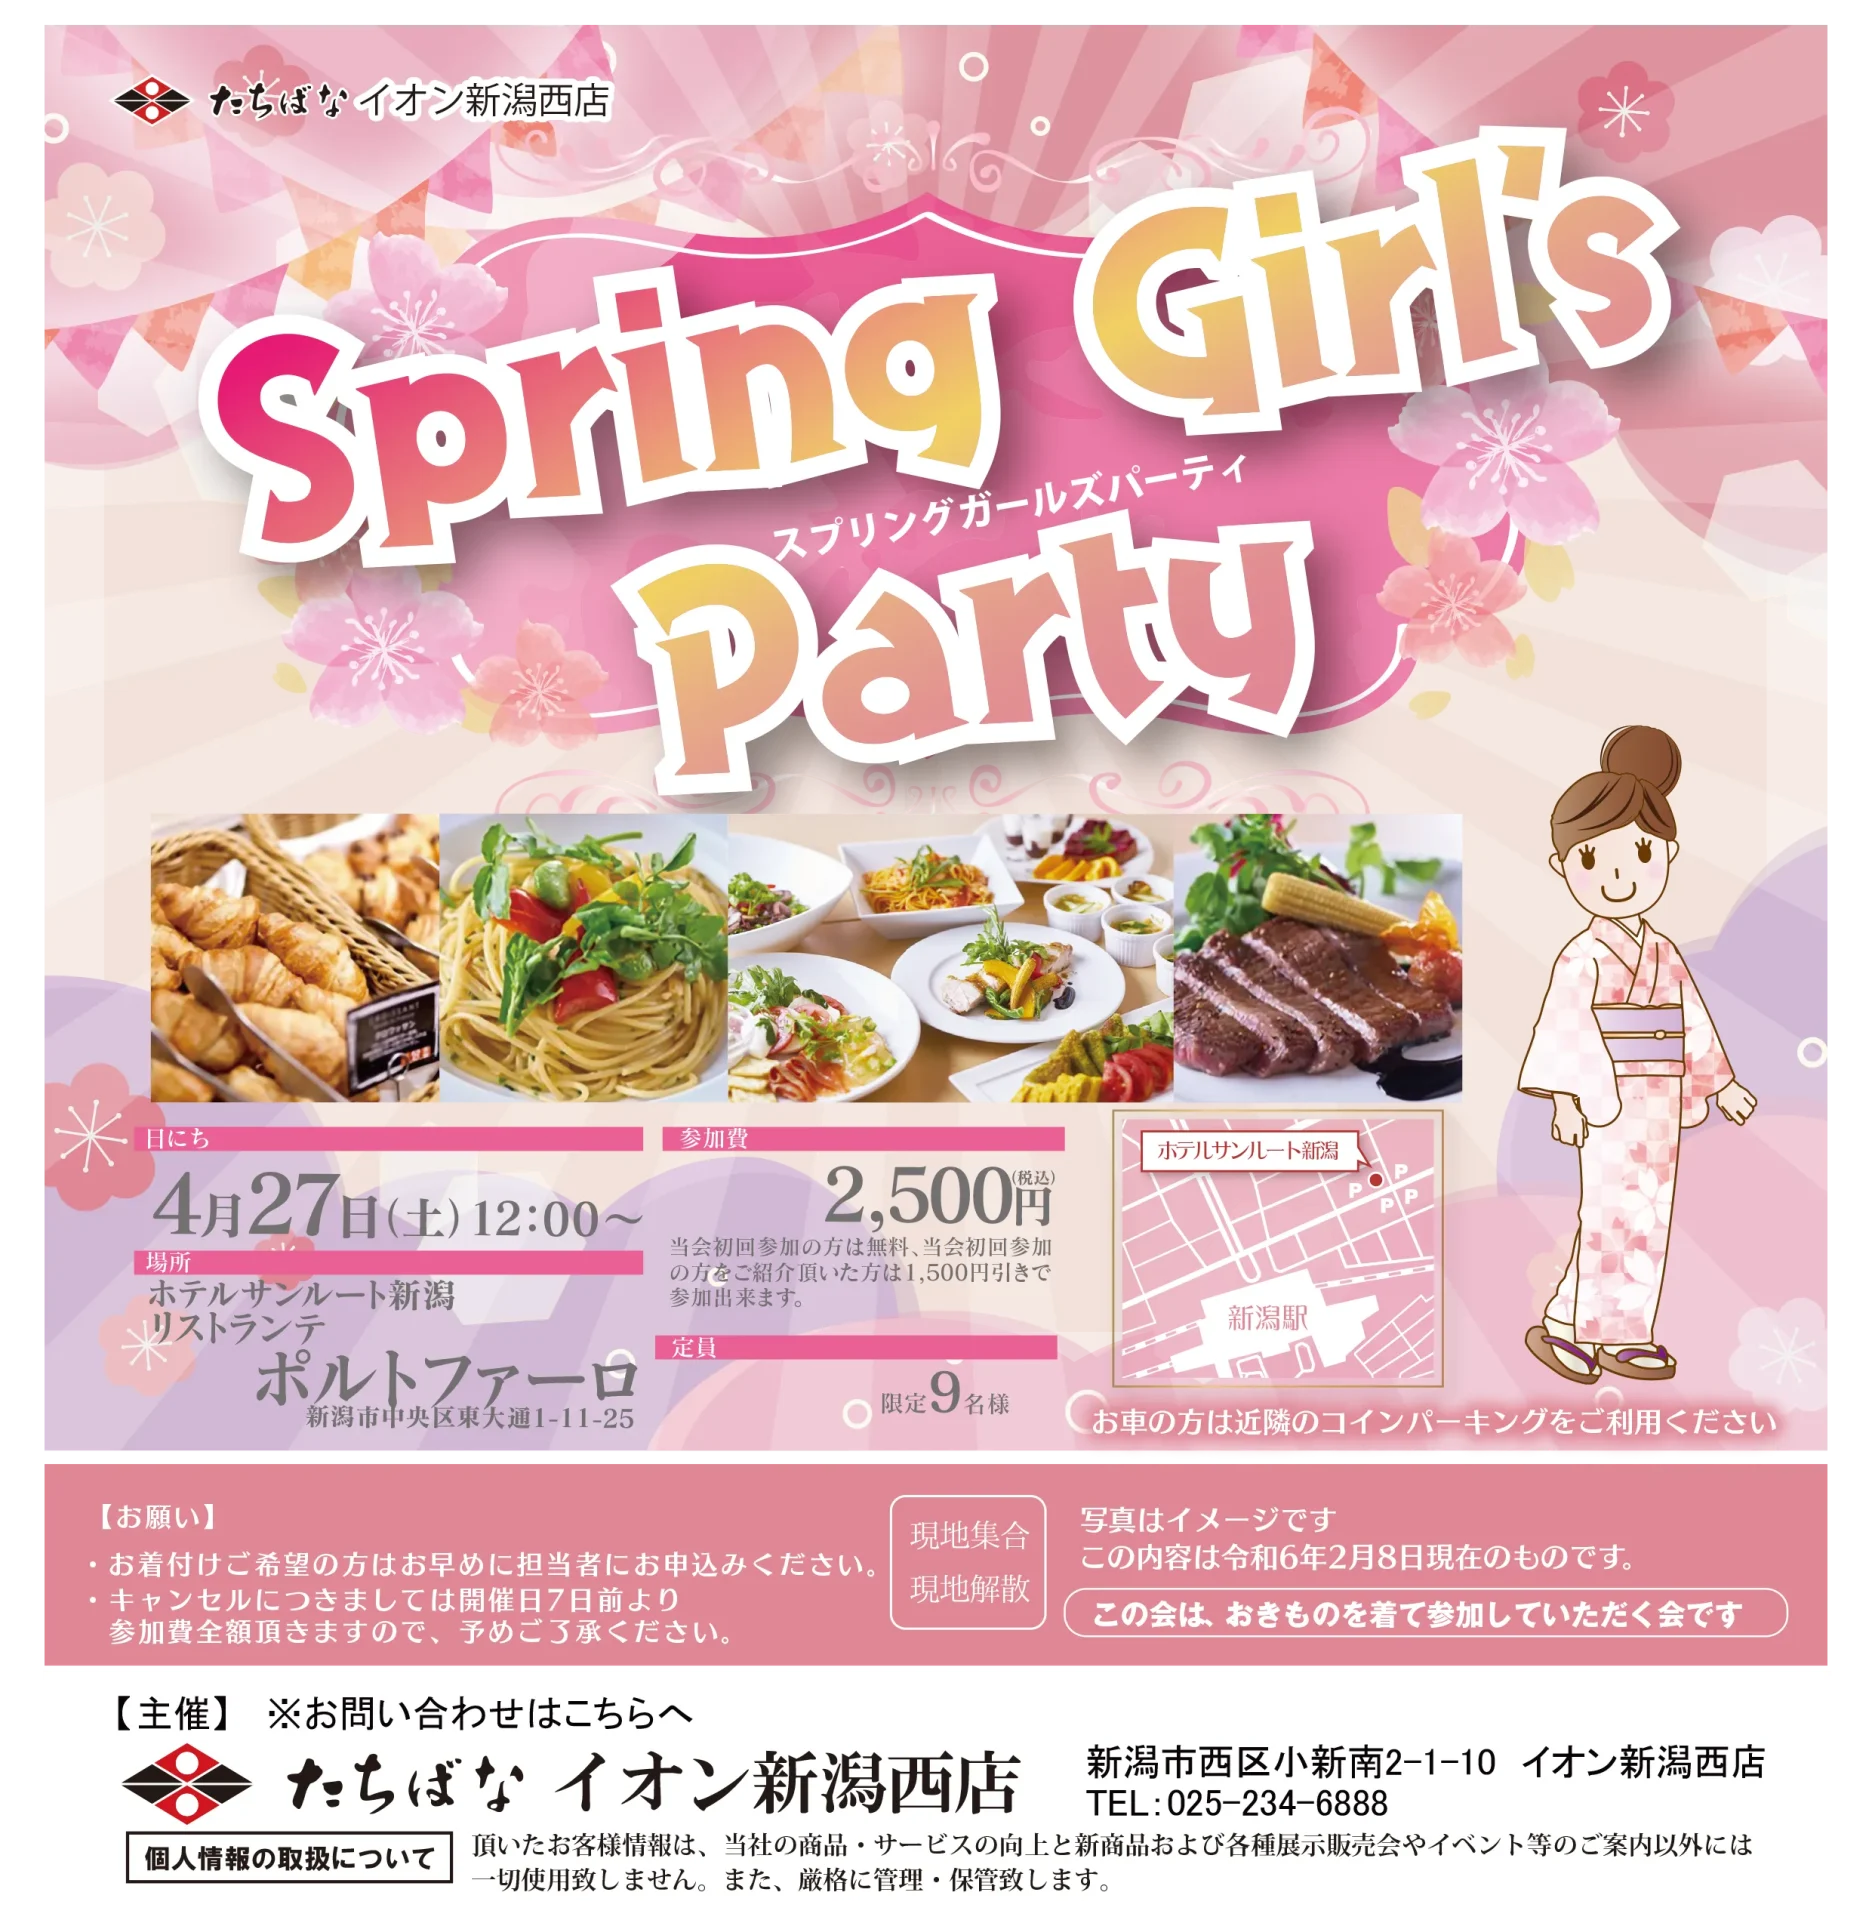 【4/27(土)】Spring Girls Party